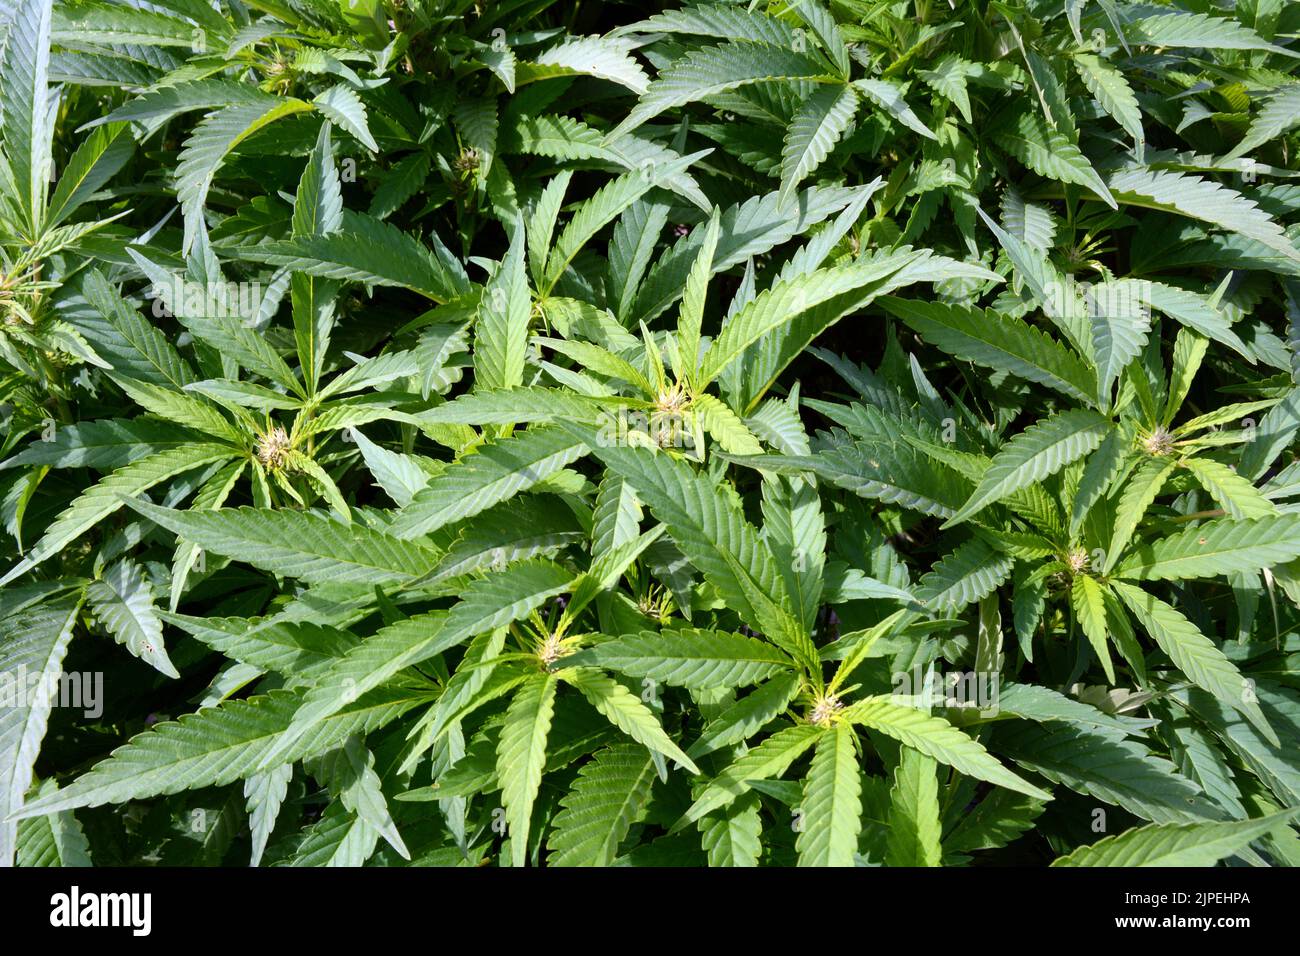 Legale Marihuana- oder Cannabispflanzen, die auf einer nachhaltigen Farm in der Nähe der Stadt Creemore (Ontario, Kanada) im Freien angebaut werden. Stockfoto